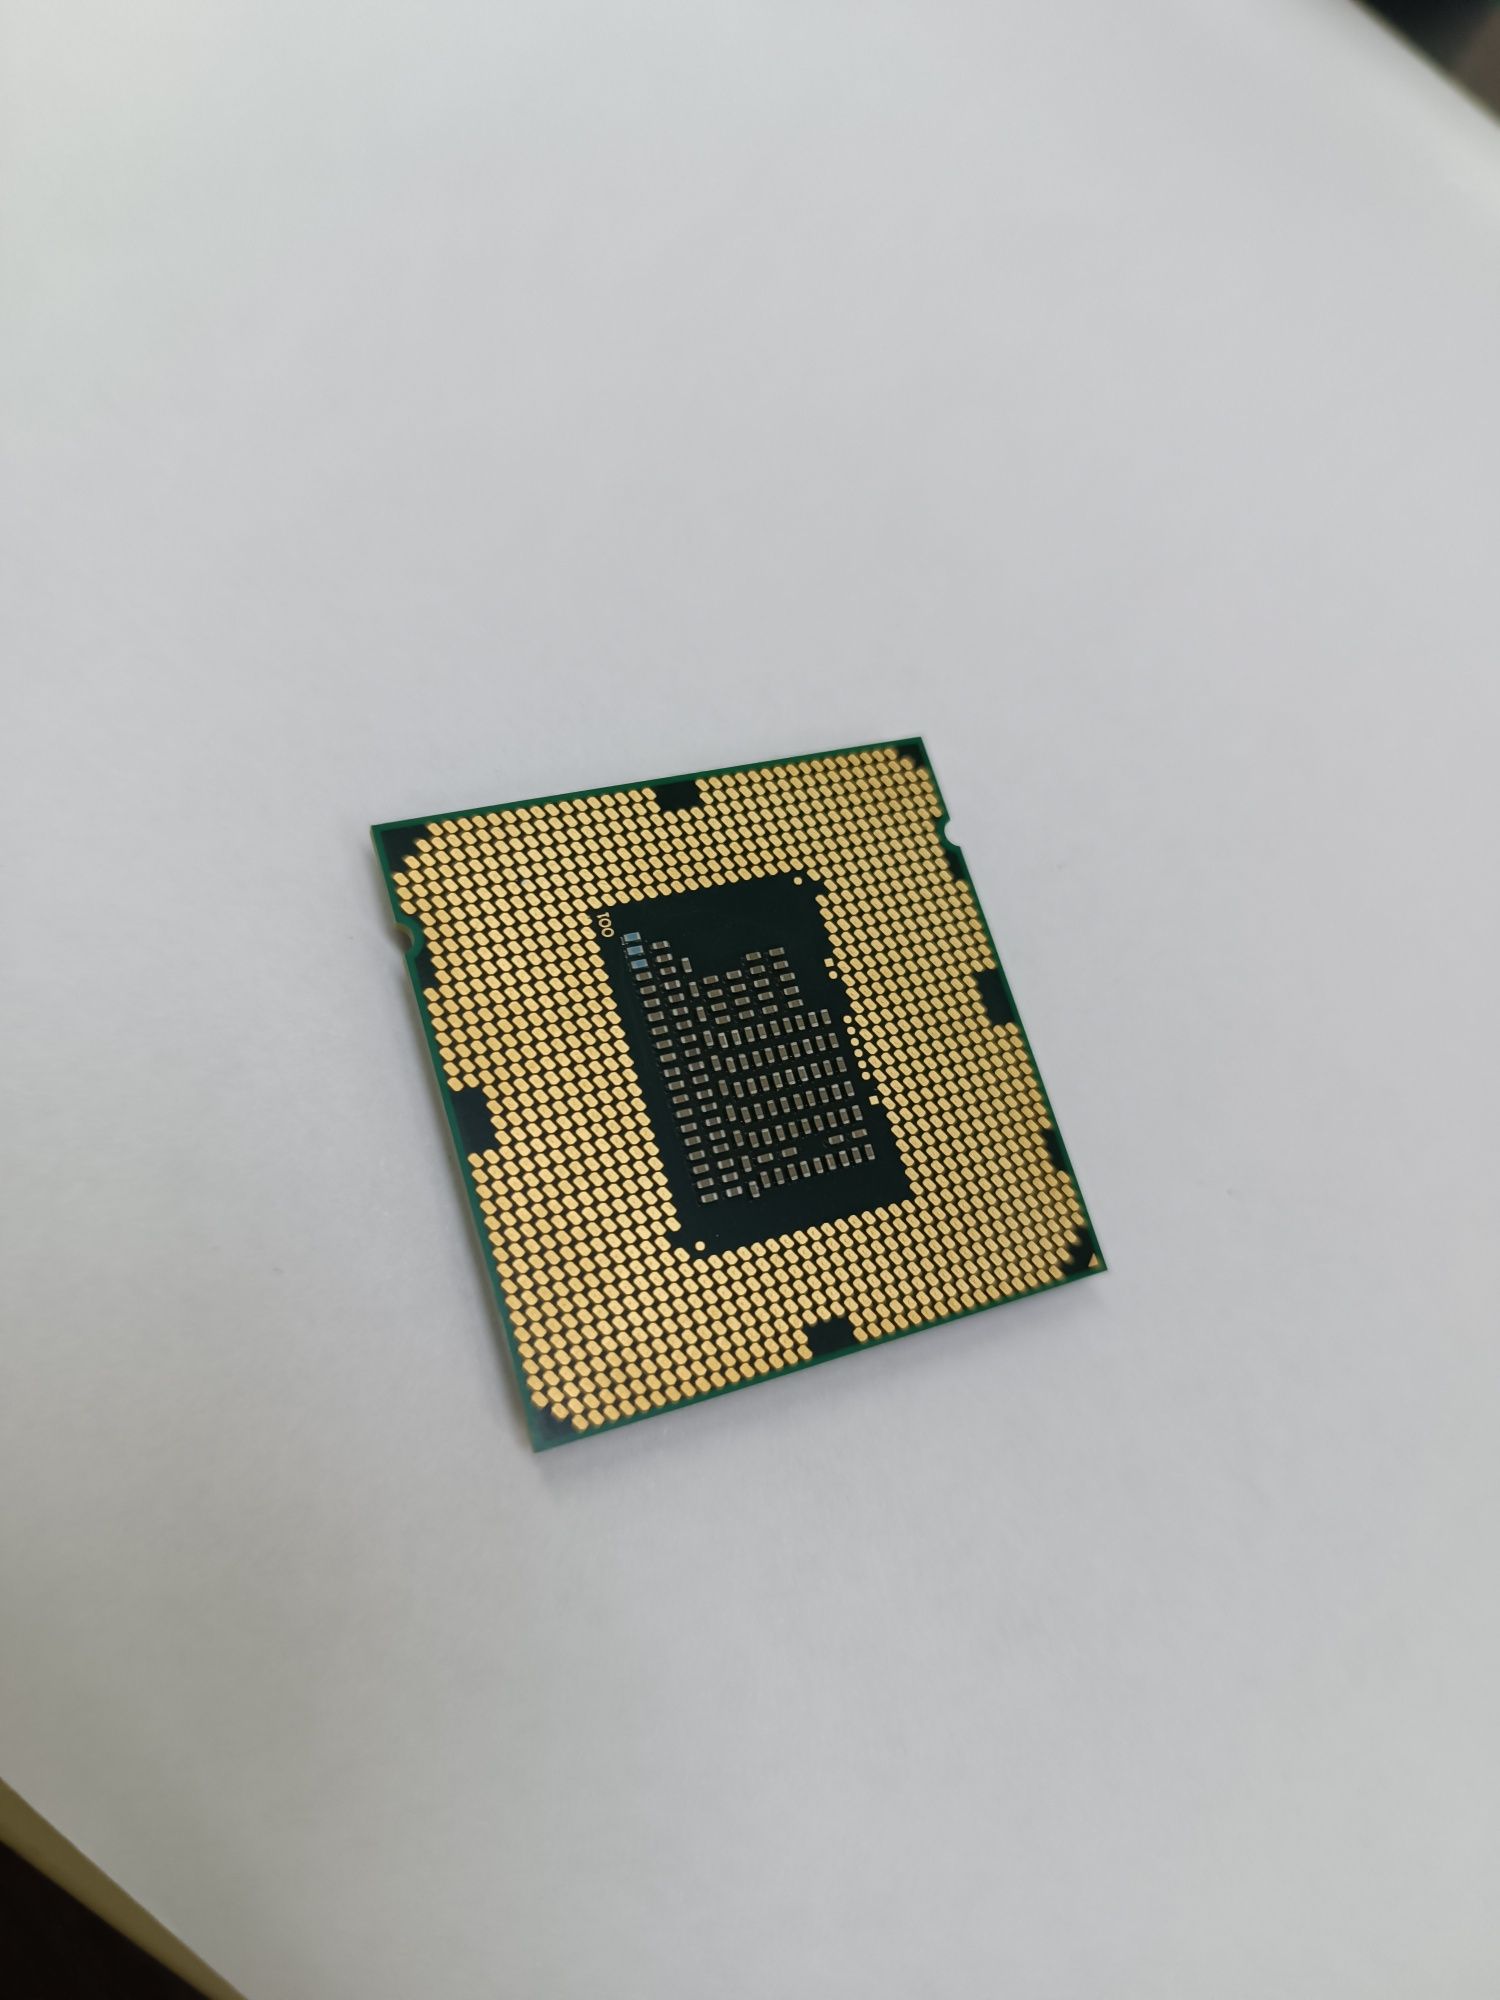 intel pentium g645 processor